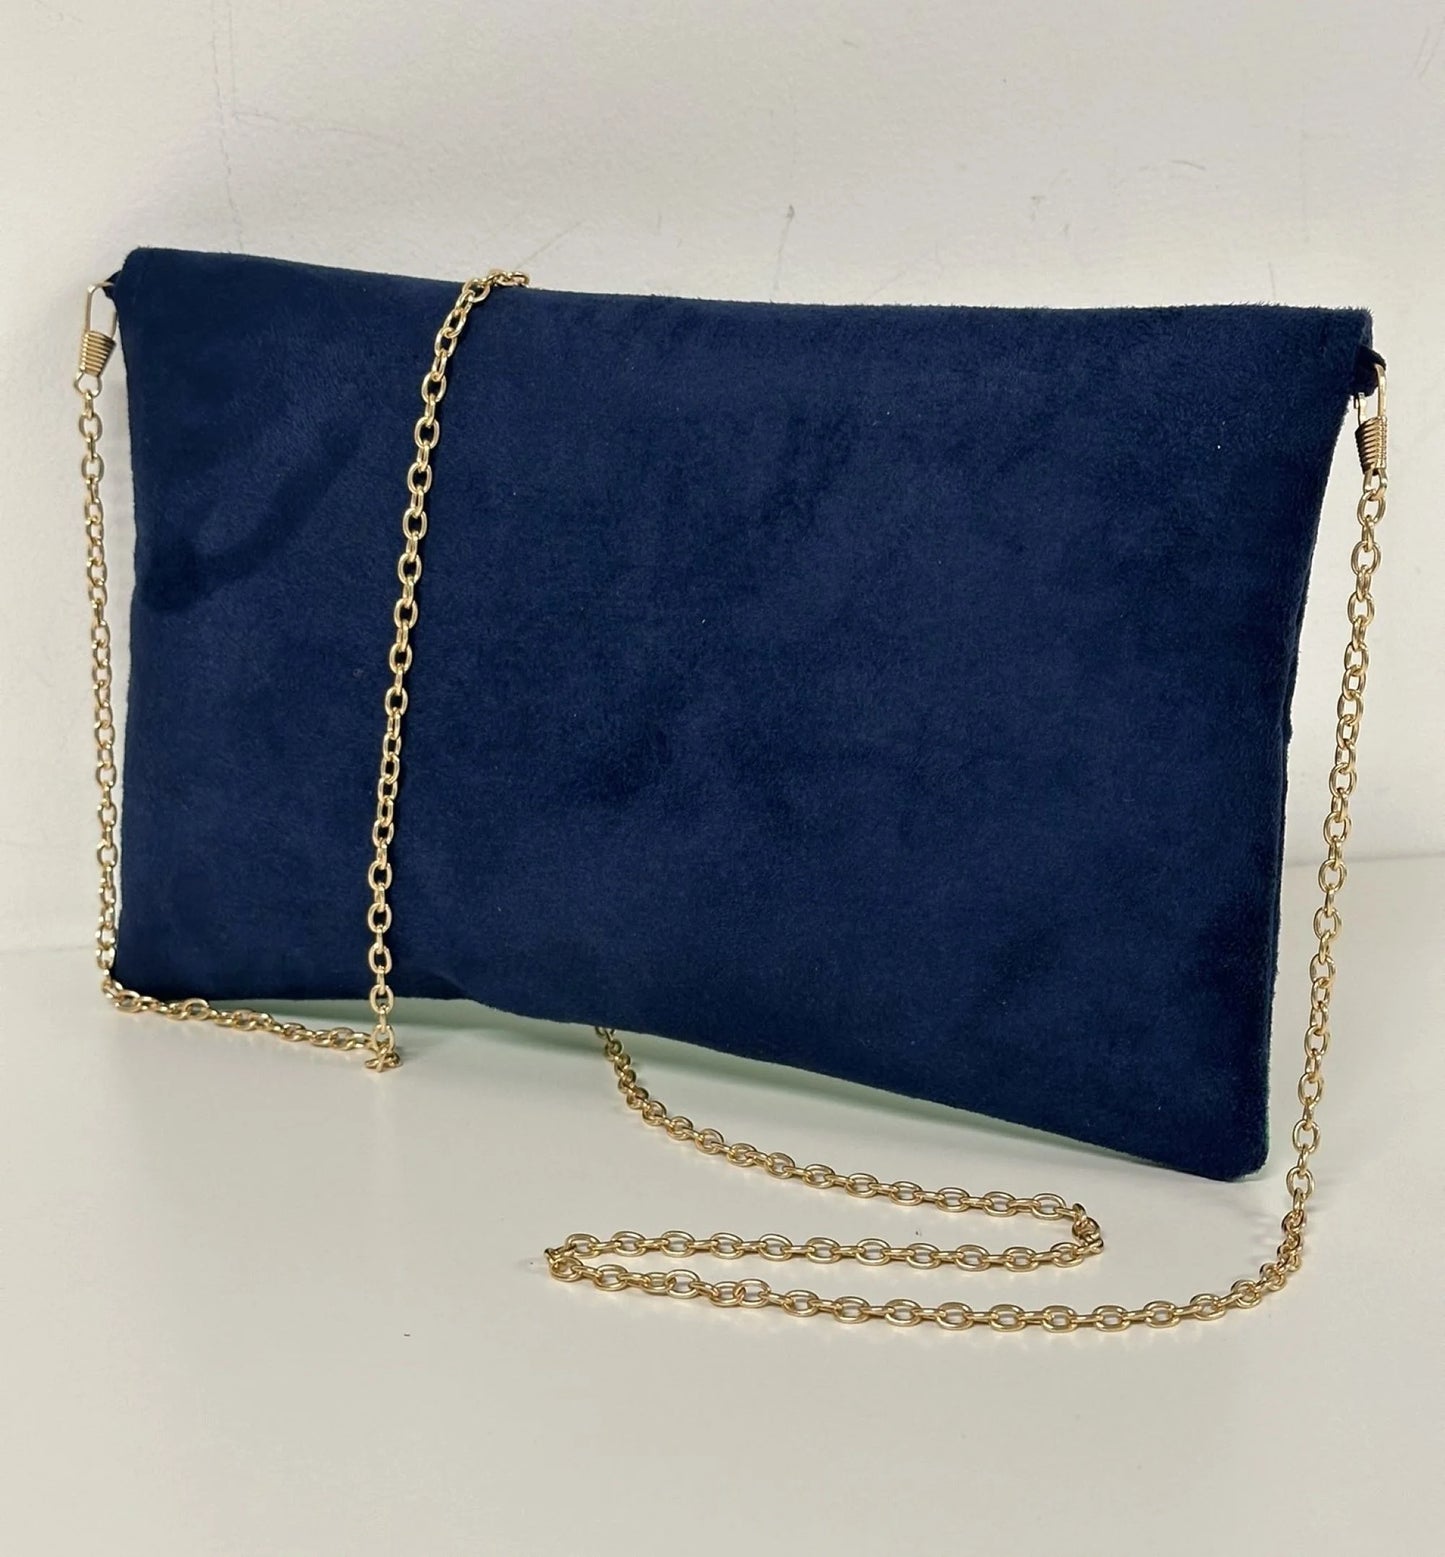 Le sac pochette Isa bleu marine et vert prairie à paillettes dorées, vue arrière.